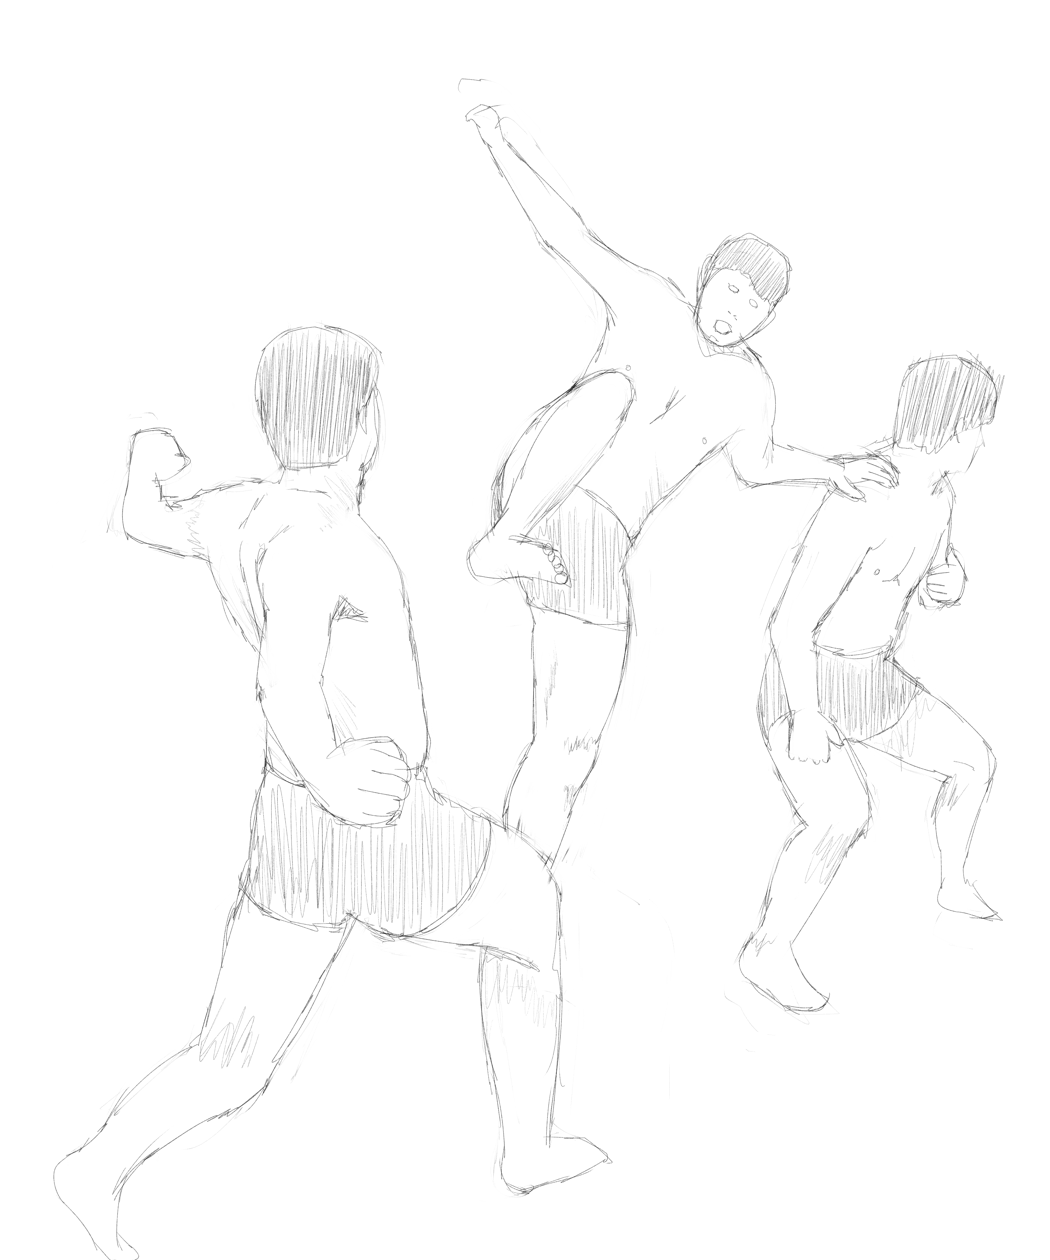 ミリタリーな人 物 他の色々な物を描くためのブログ 瞬撮アクションポーズ02 バディアクション編を見つつ 男性の体と衣服を描く練習 水着男性 その８ 味方の肩を使っての飛び蹴り